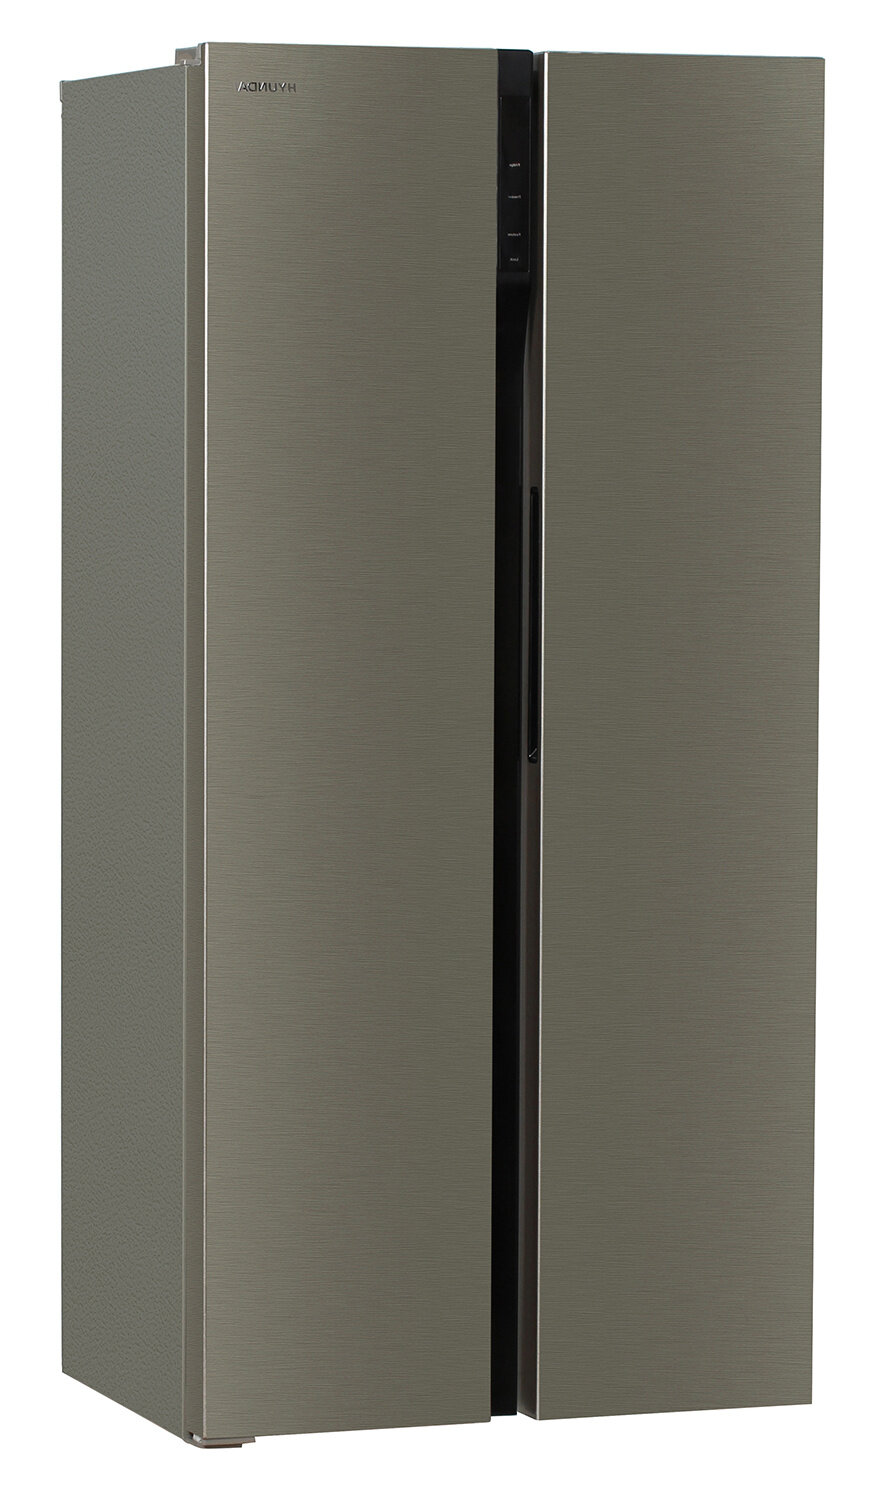 Холодильники Side by Side Hyundai Холодильник Hyundai CS4505F нержавеющая сталь